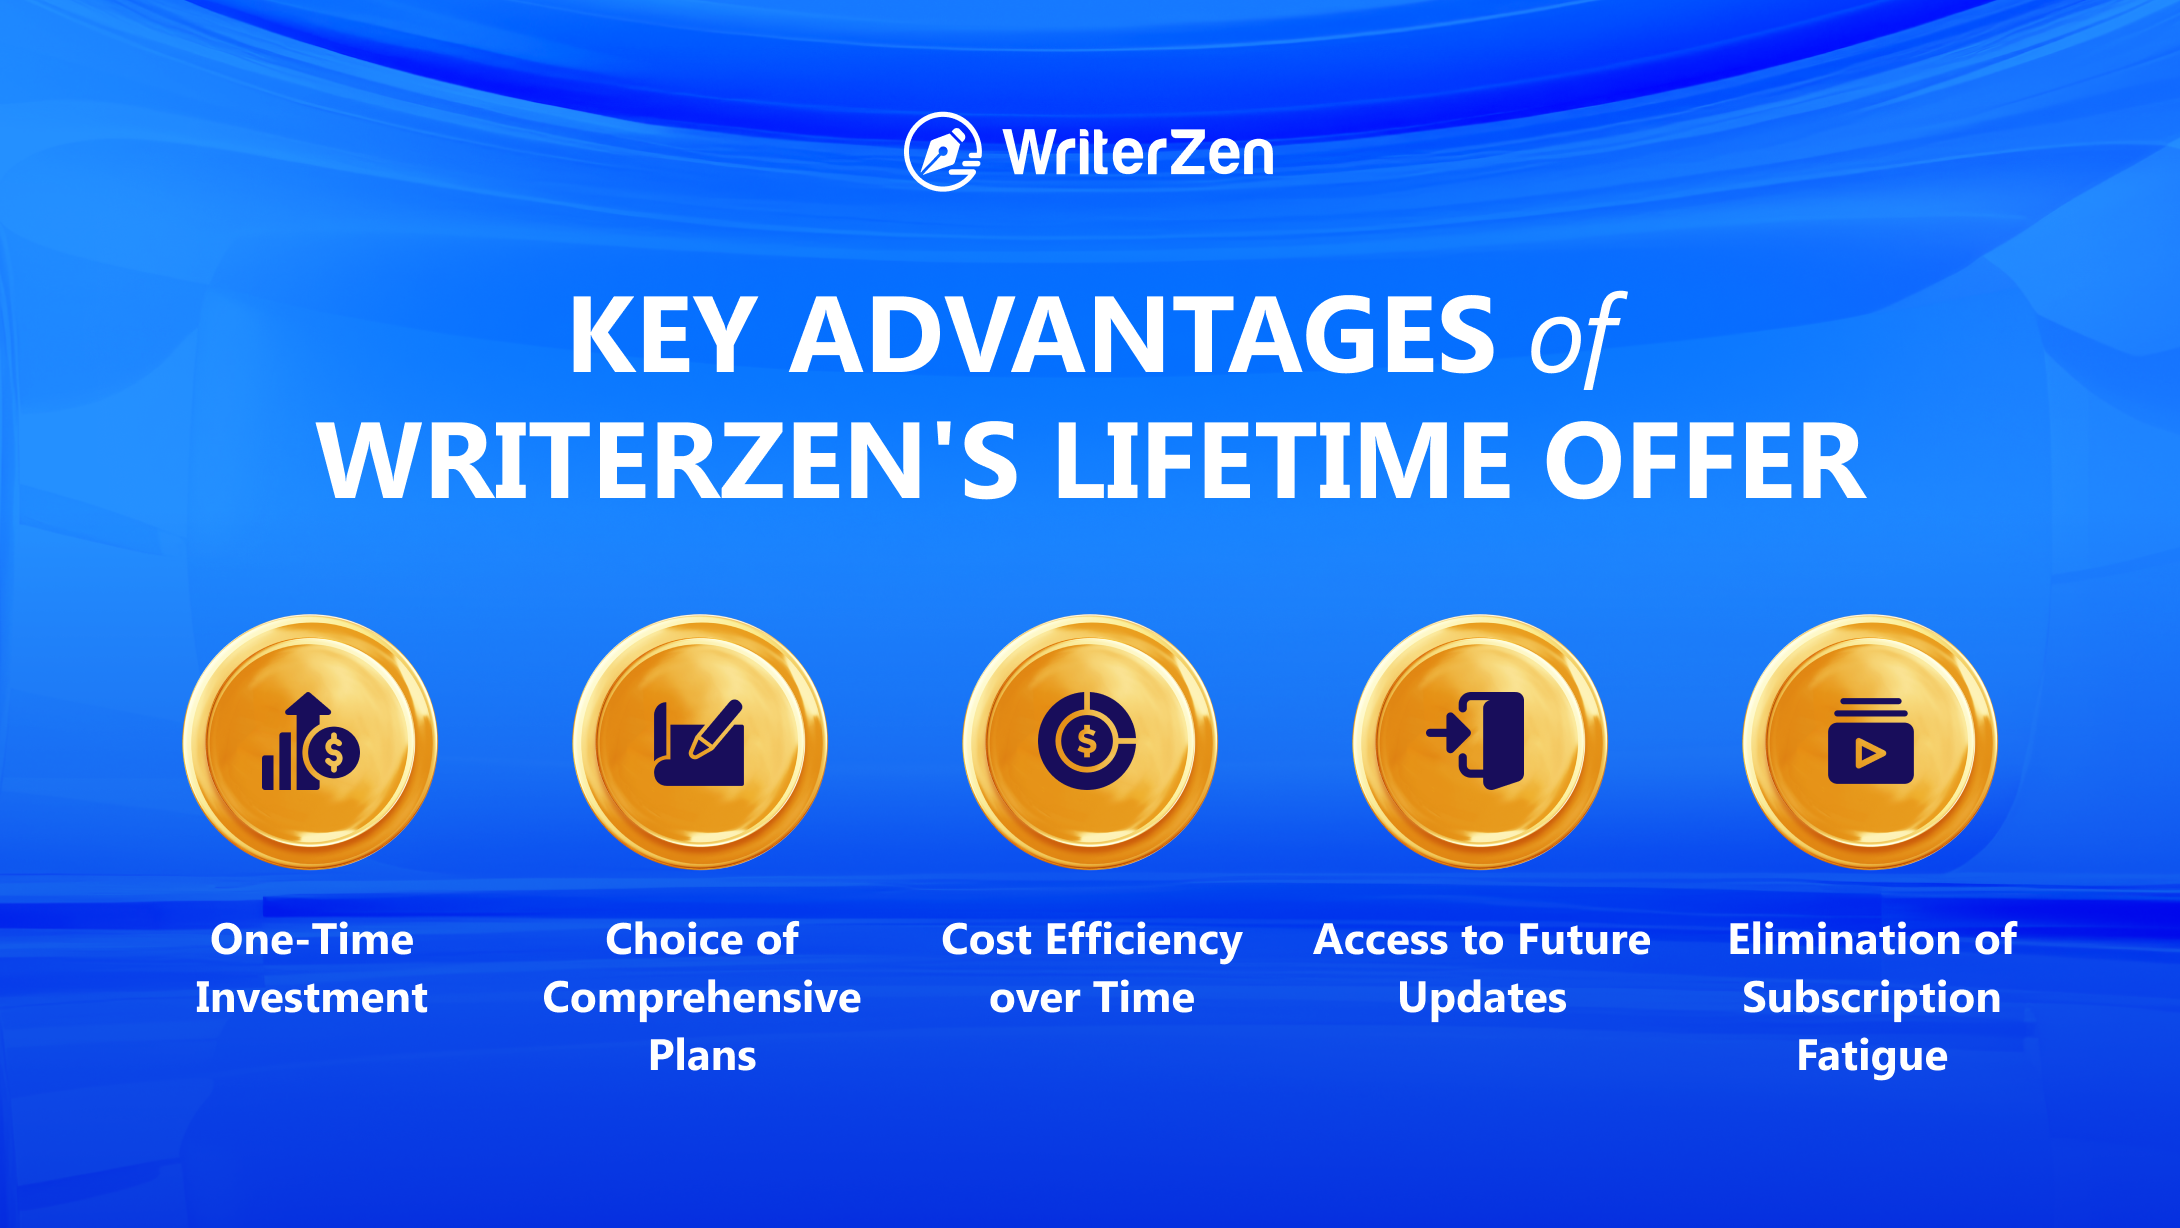 Key Advantages of WriterZen's Lifetime Offer